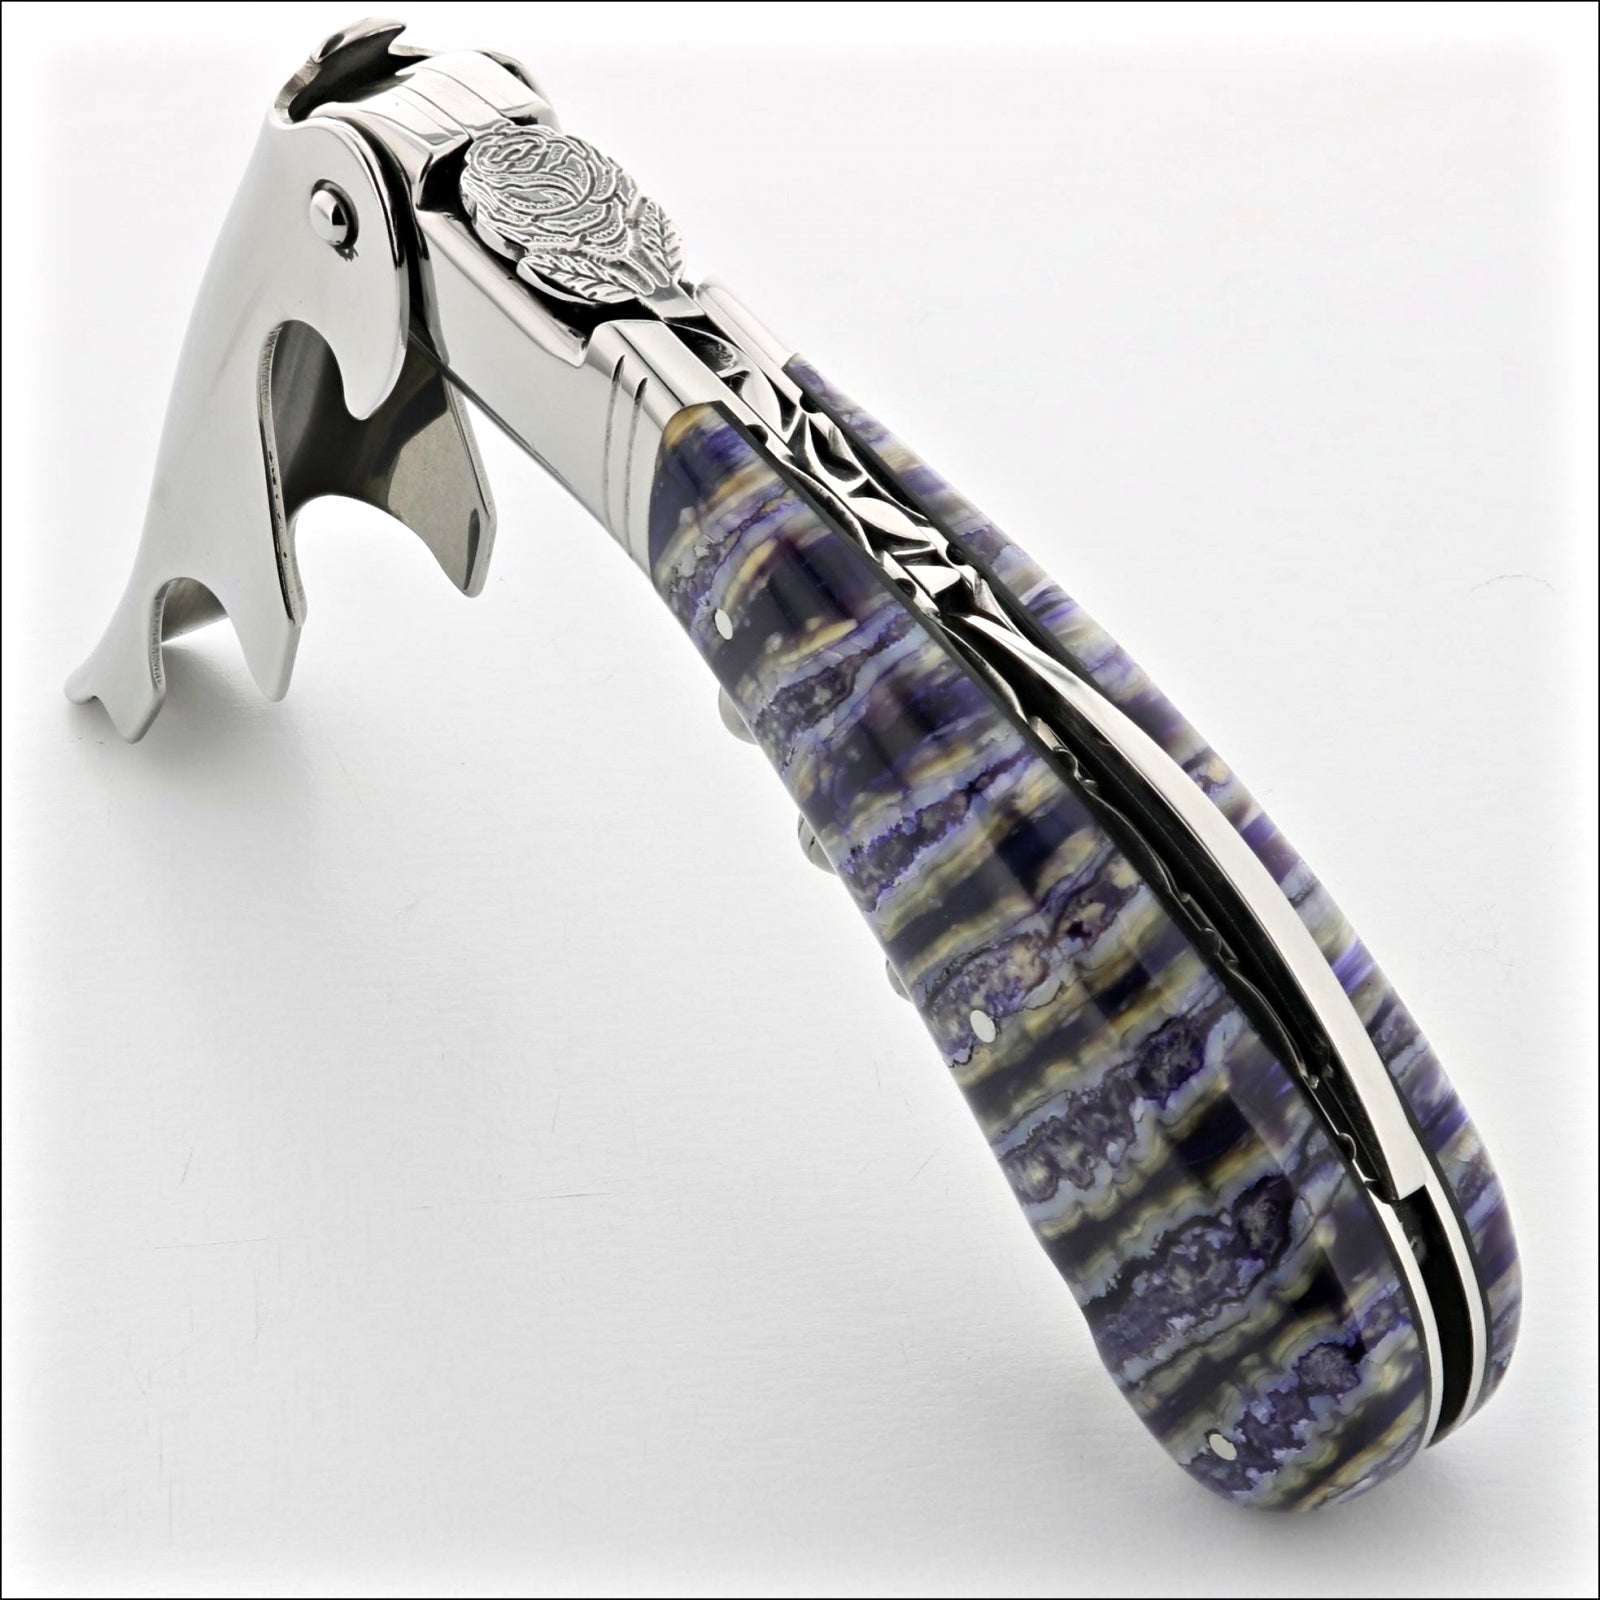 Forge de Laguiole Steak Knives - Purple